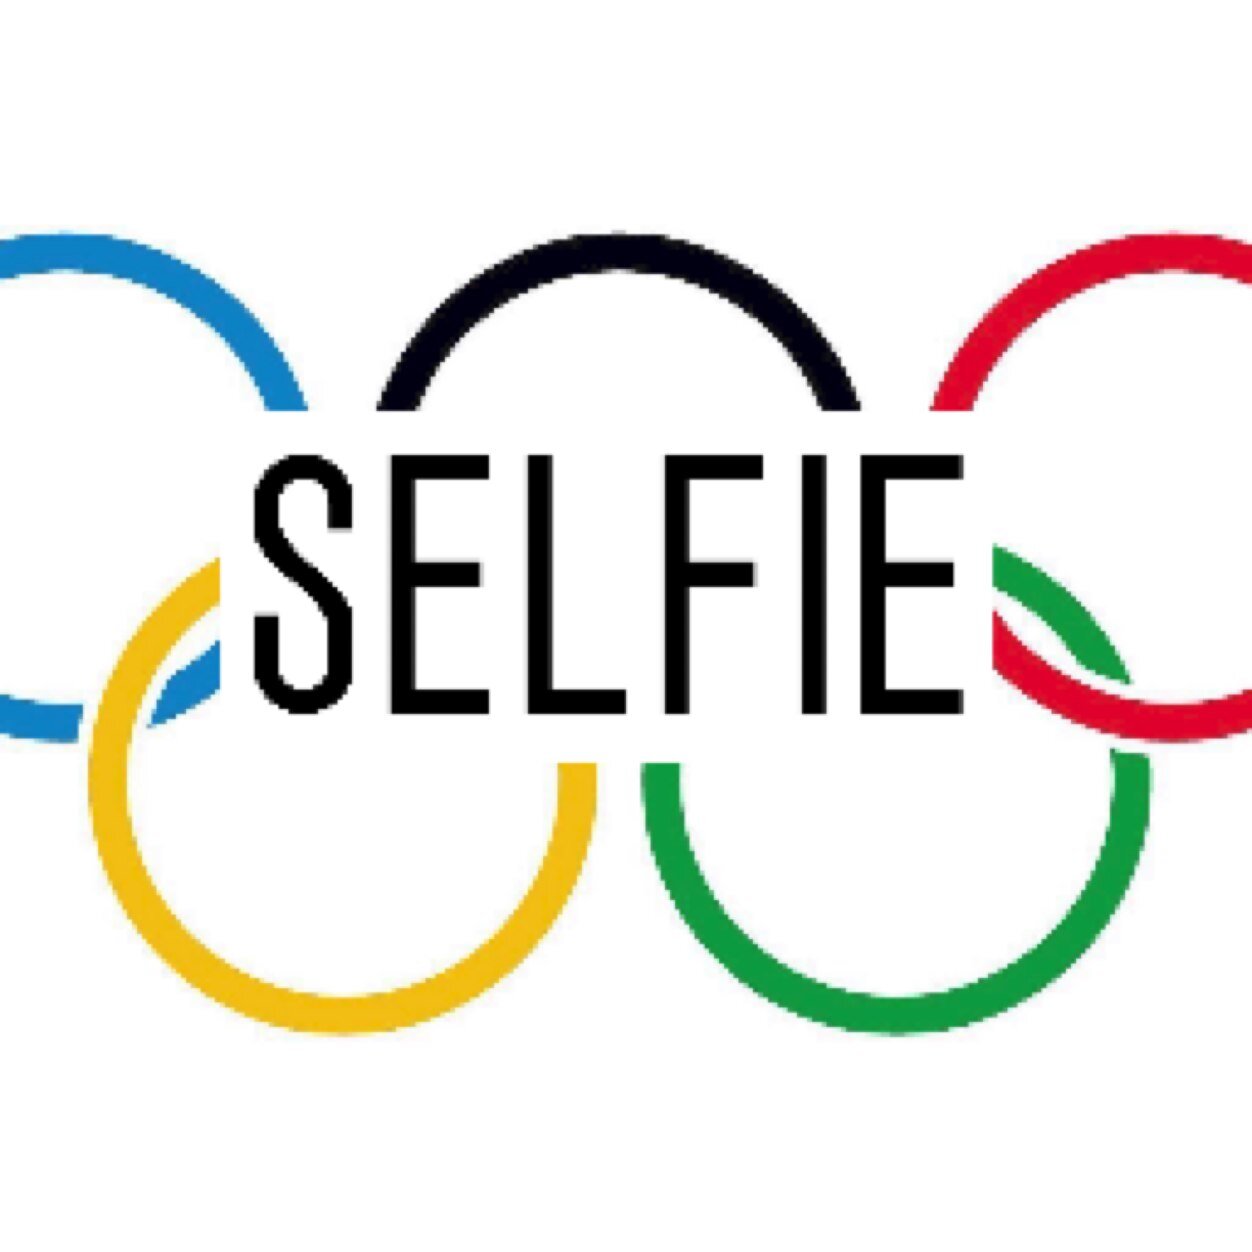 The Selfie Olympics